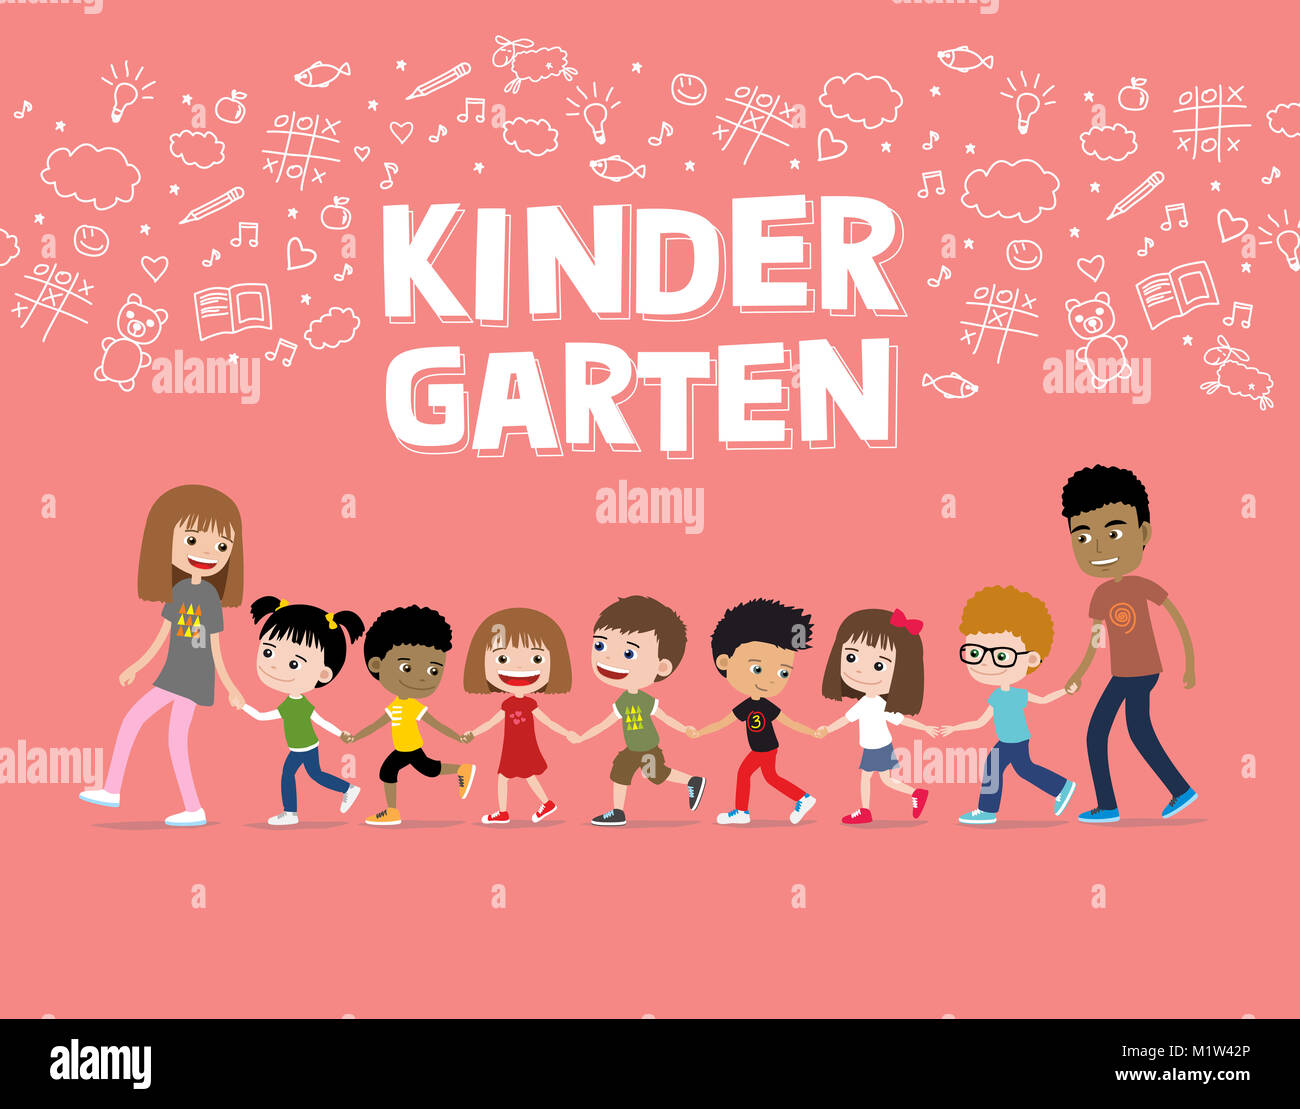 Niños en edad preescolar o kindergarten caminando con los maestros. Ilustración de dibujos animados de niños alegres junto con adultos Foto de stock